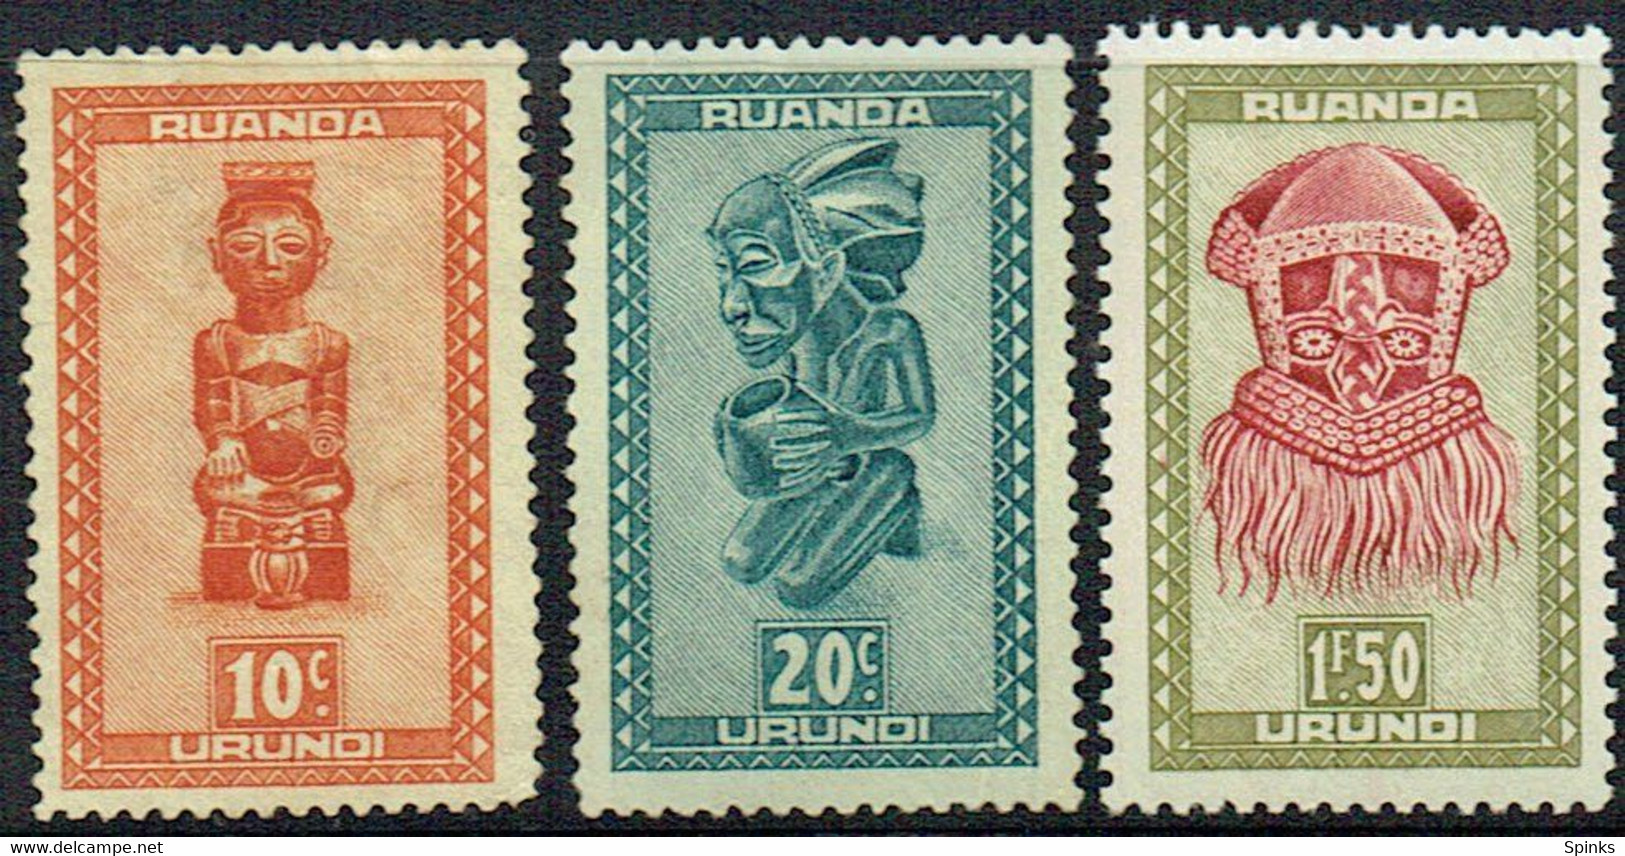 RUANDA URUNDI 1948 Indigenous Art M - Unused Stamps